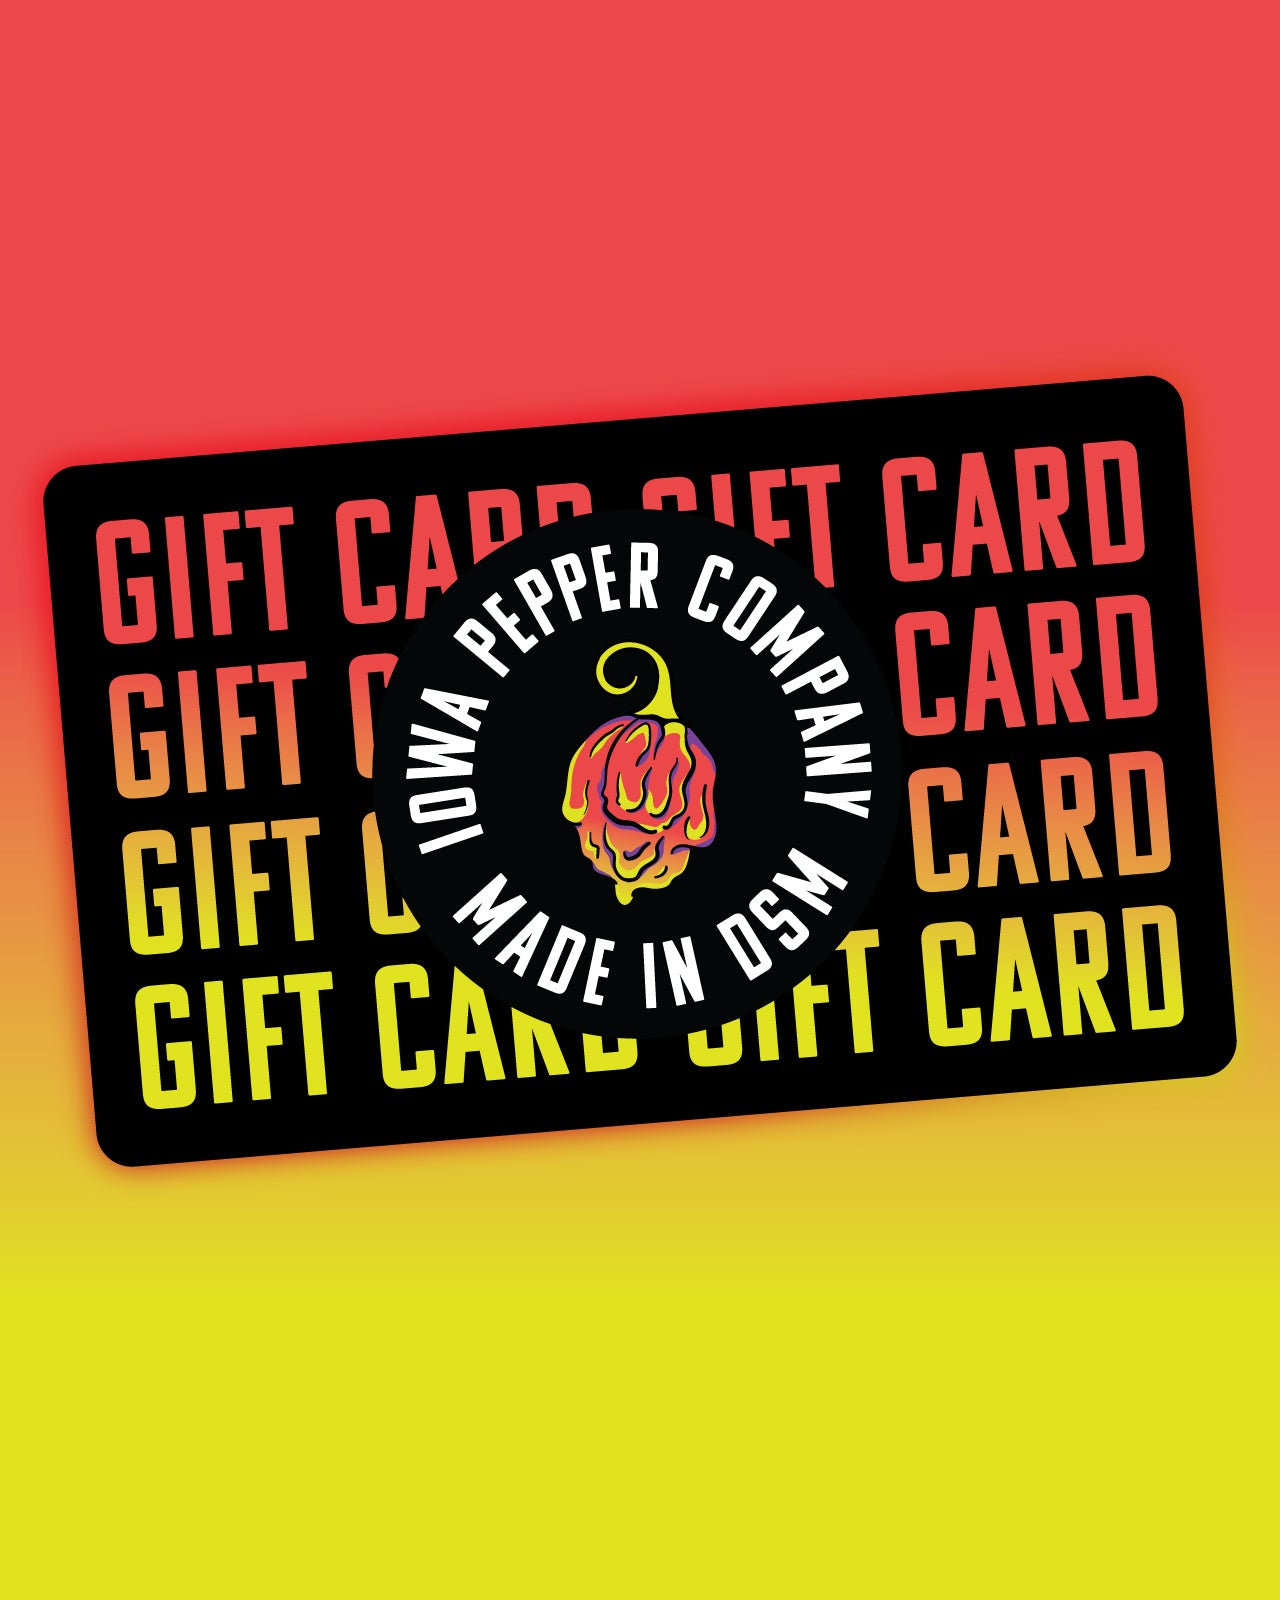 Iowa Pepper Co. Gift Card